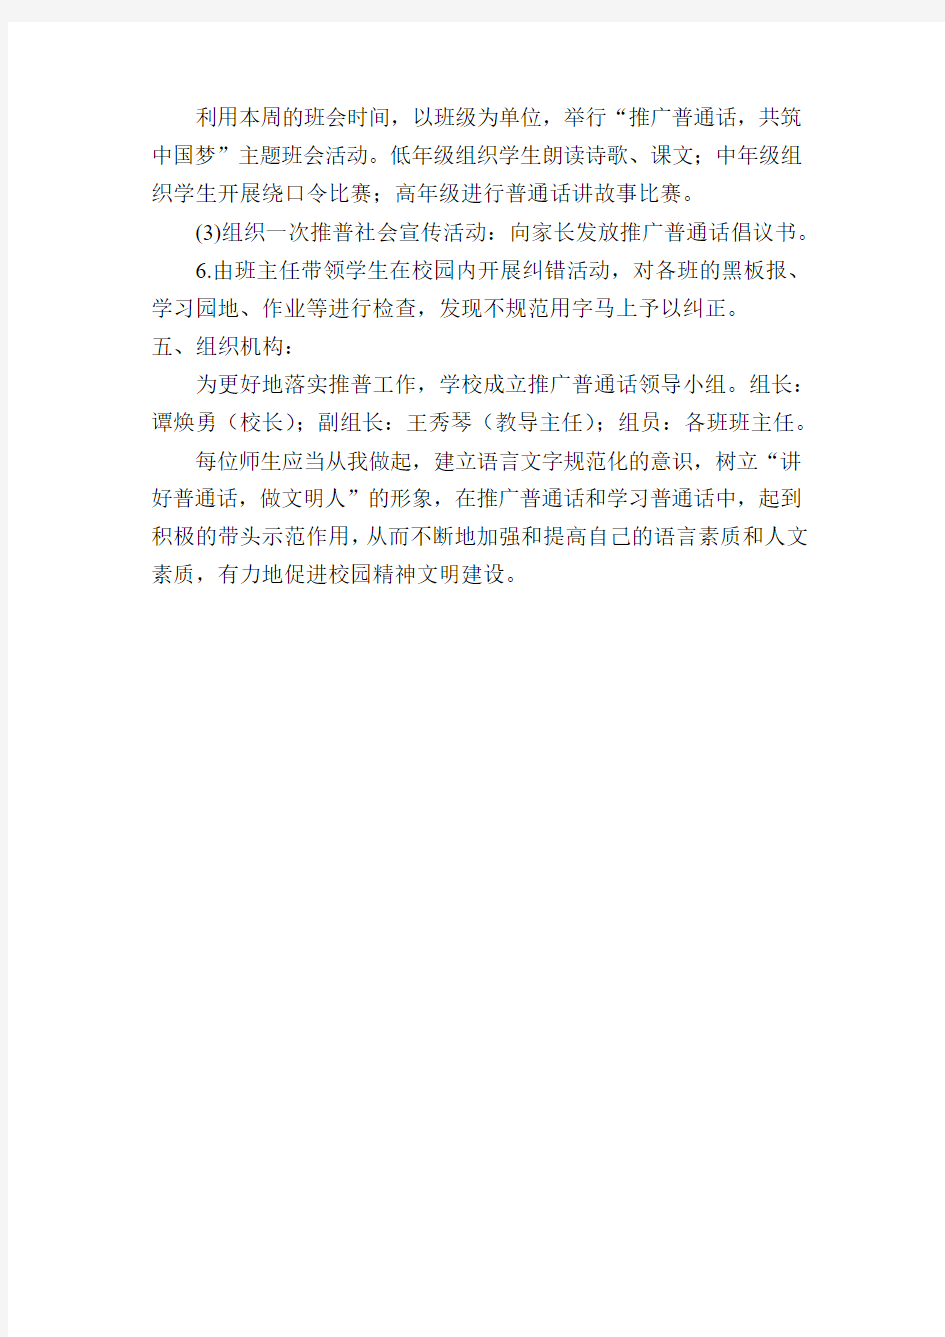 龙山店小学2014年推广普通话宣传周活动方案